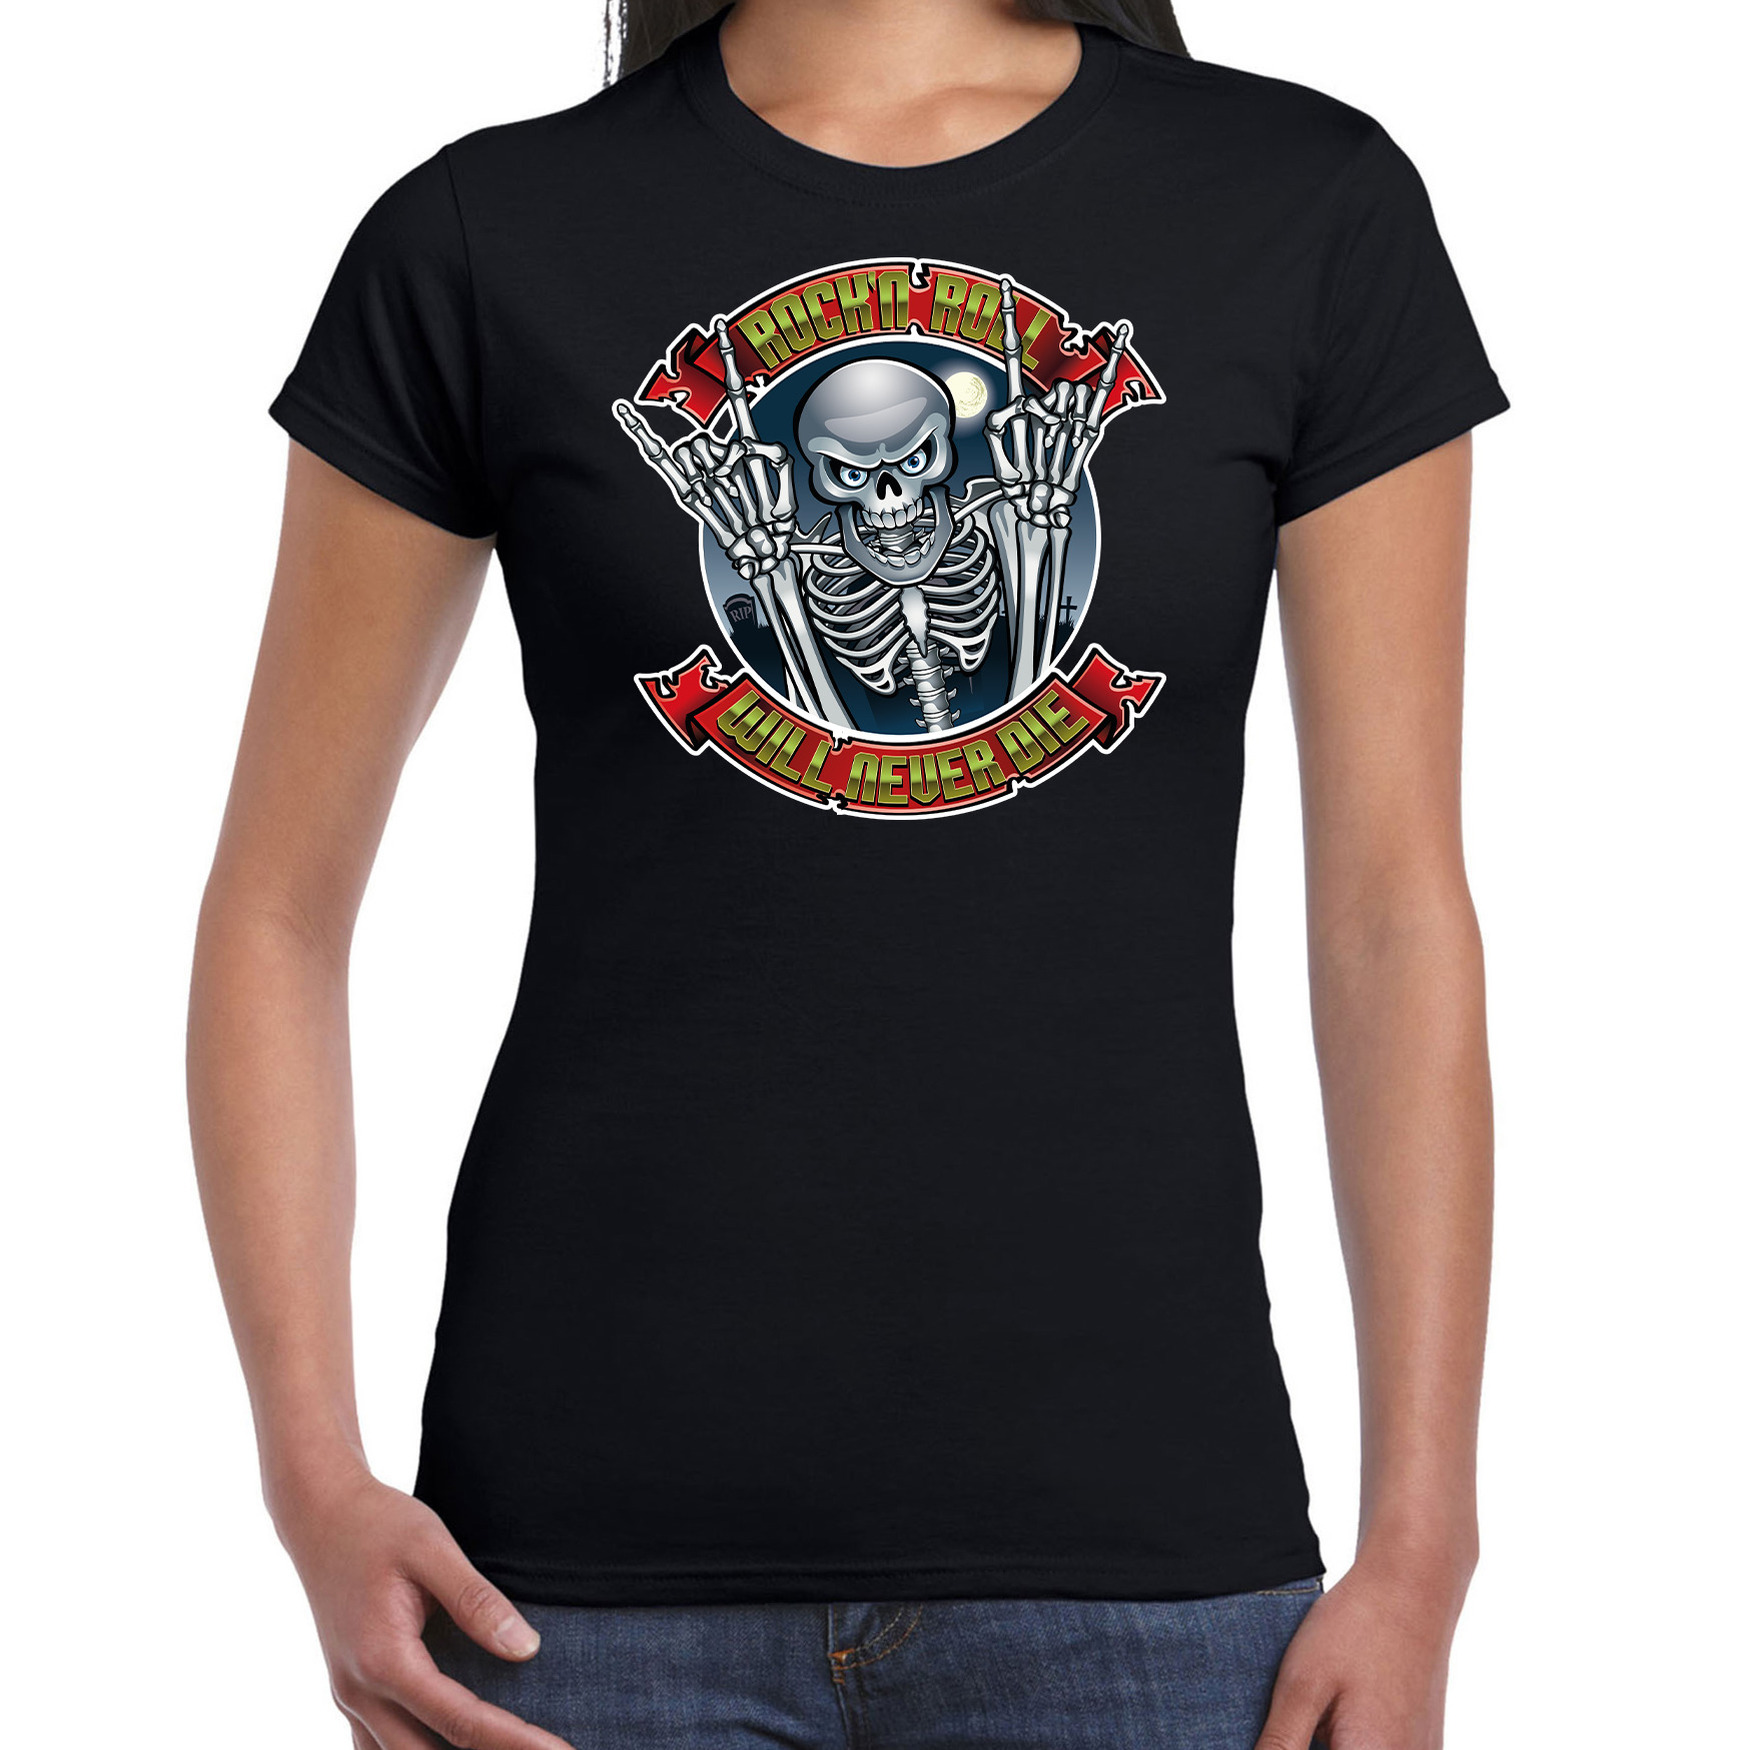 Halloween rock en roll skelet verkleed t-shirt zwart voor dames